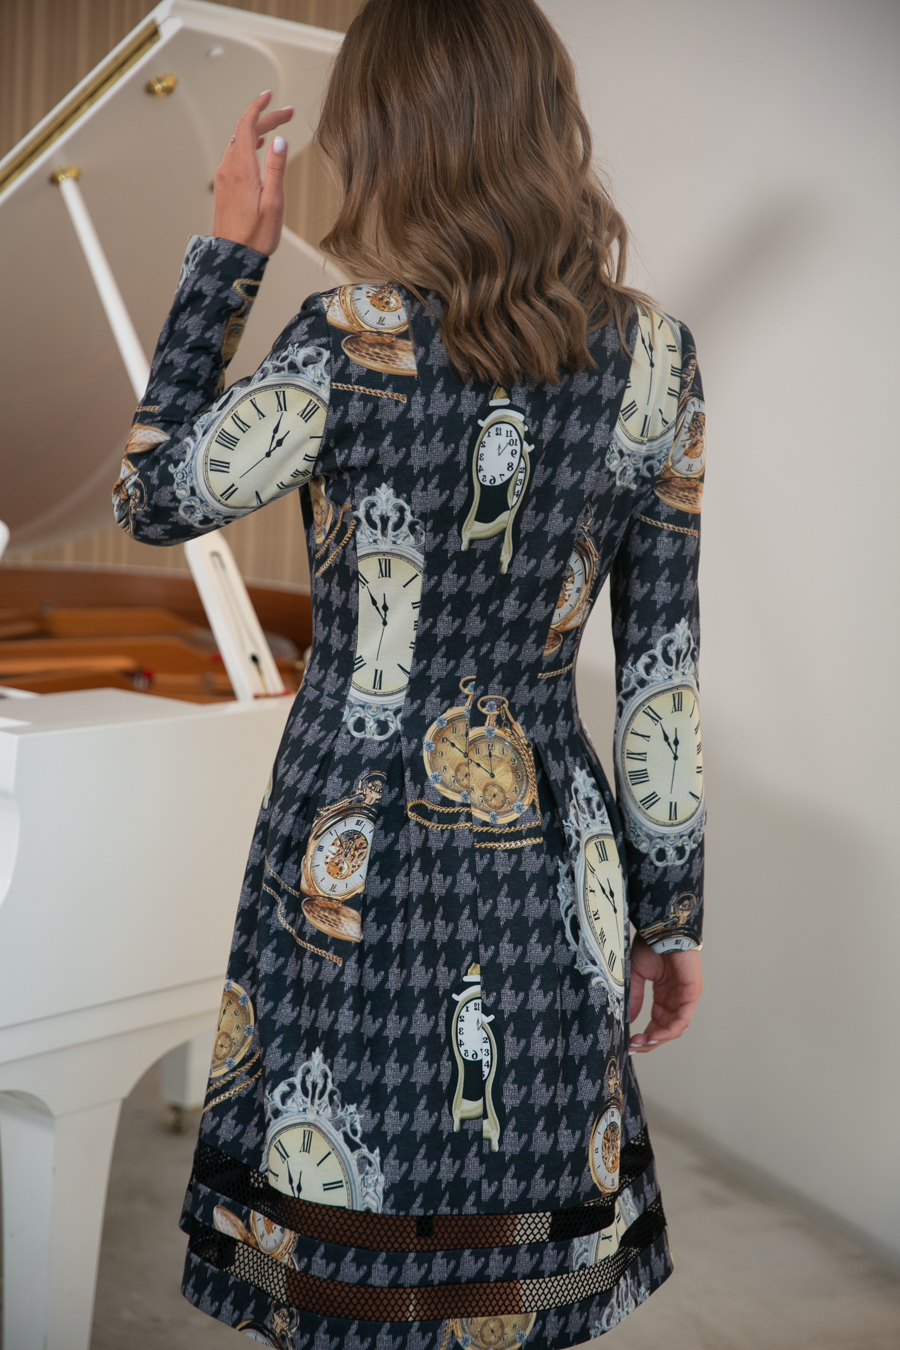 Нона, трикотажное платье А-силуэта с принтом, юбка украшена крупной вязаной сеткой от Ритини